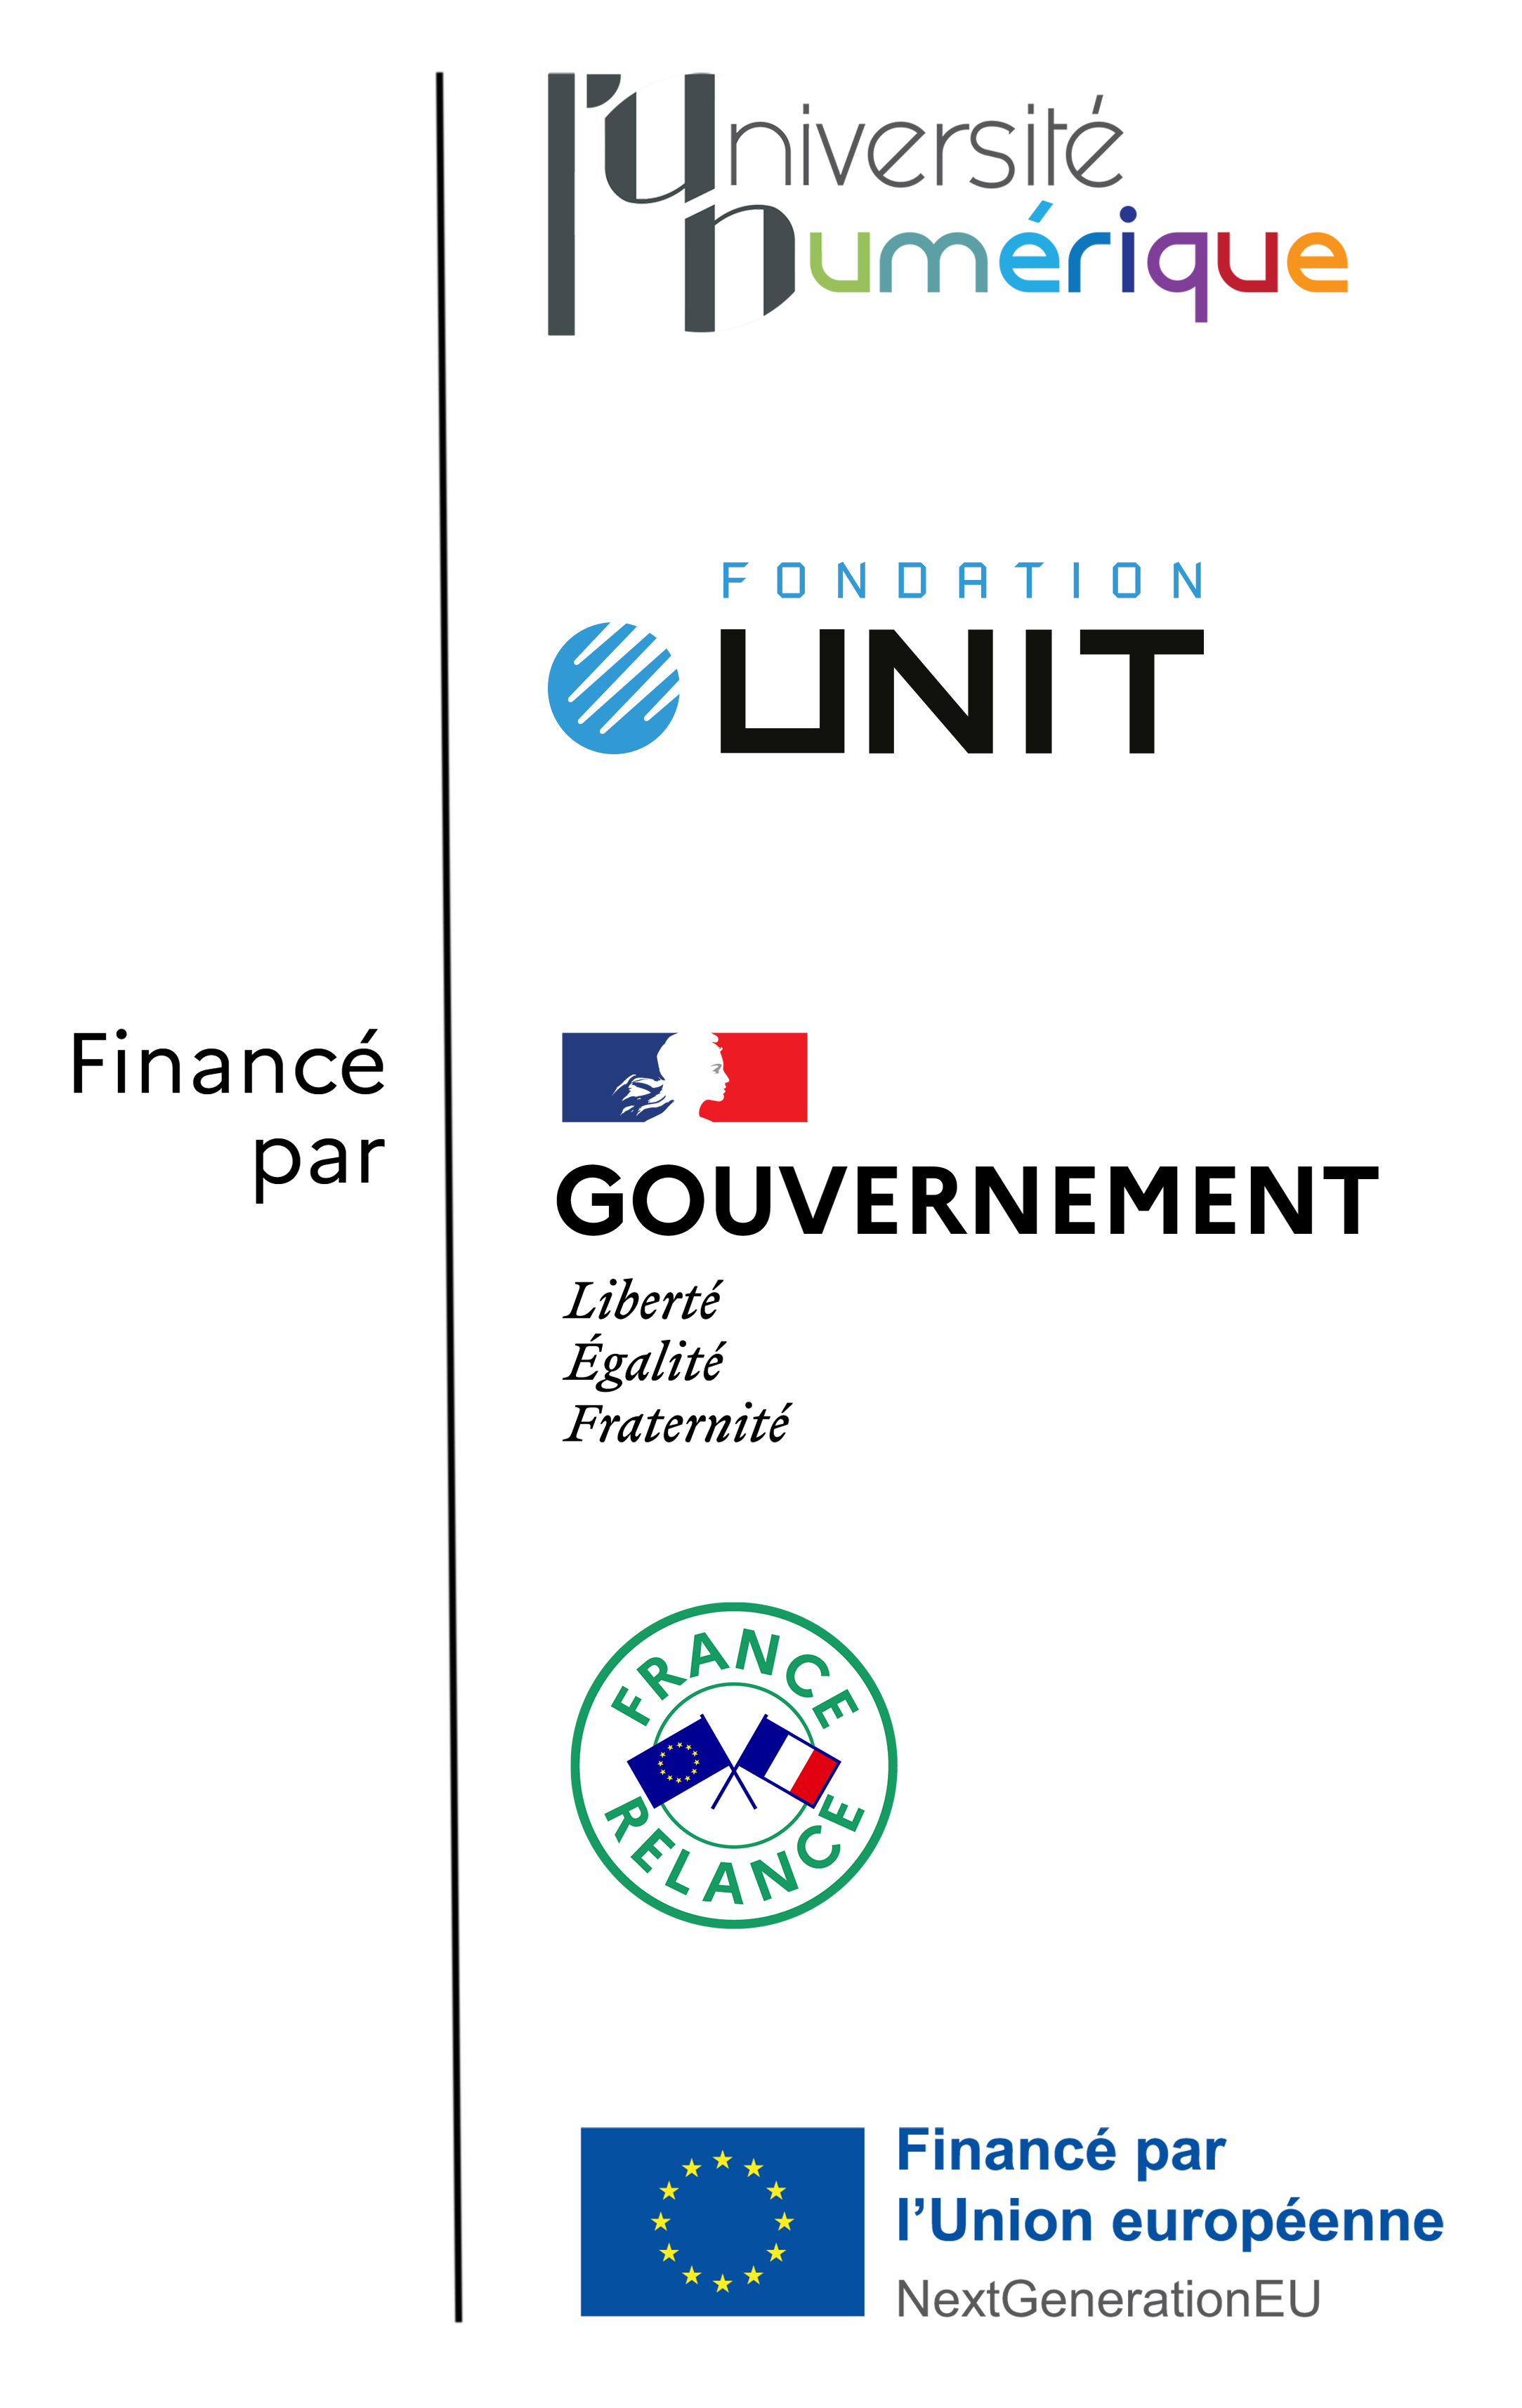 Logos of France Relance, Government of France, L'Université Numérique, Fondation UNIT, European Union